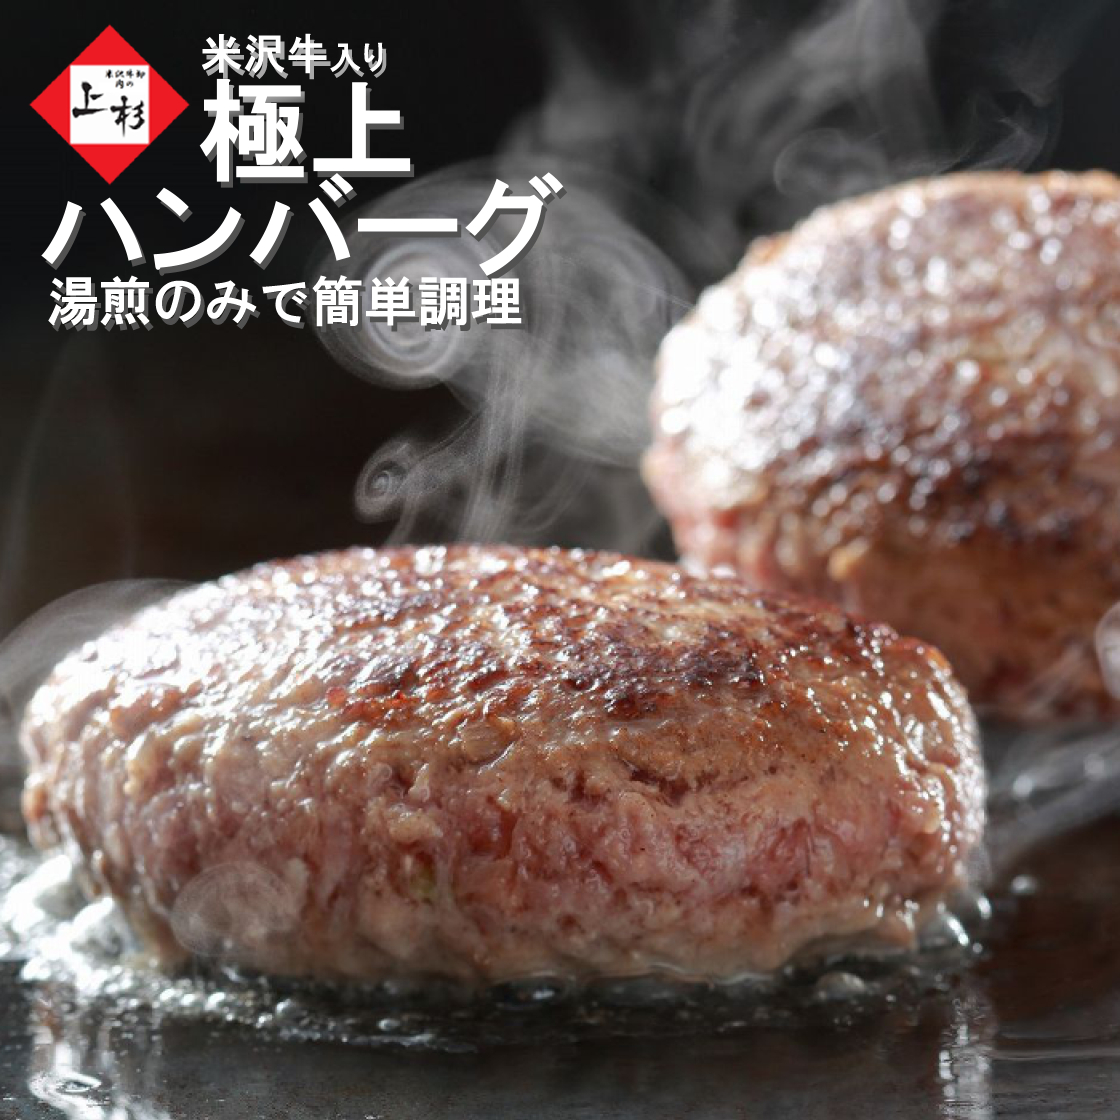 [送料無料] 米沢牛入りハンバーグ 150g 湯煎で温めるだけ画像